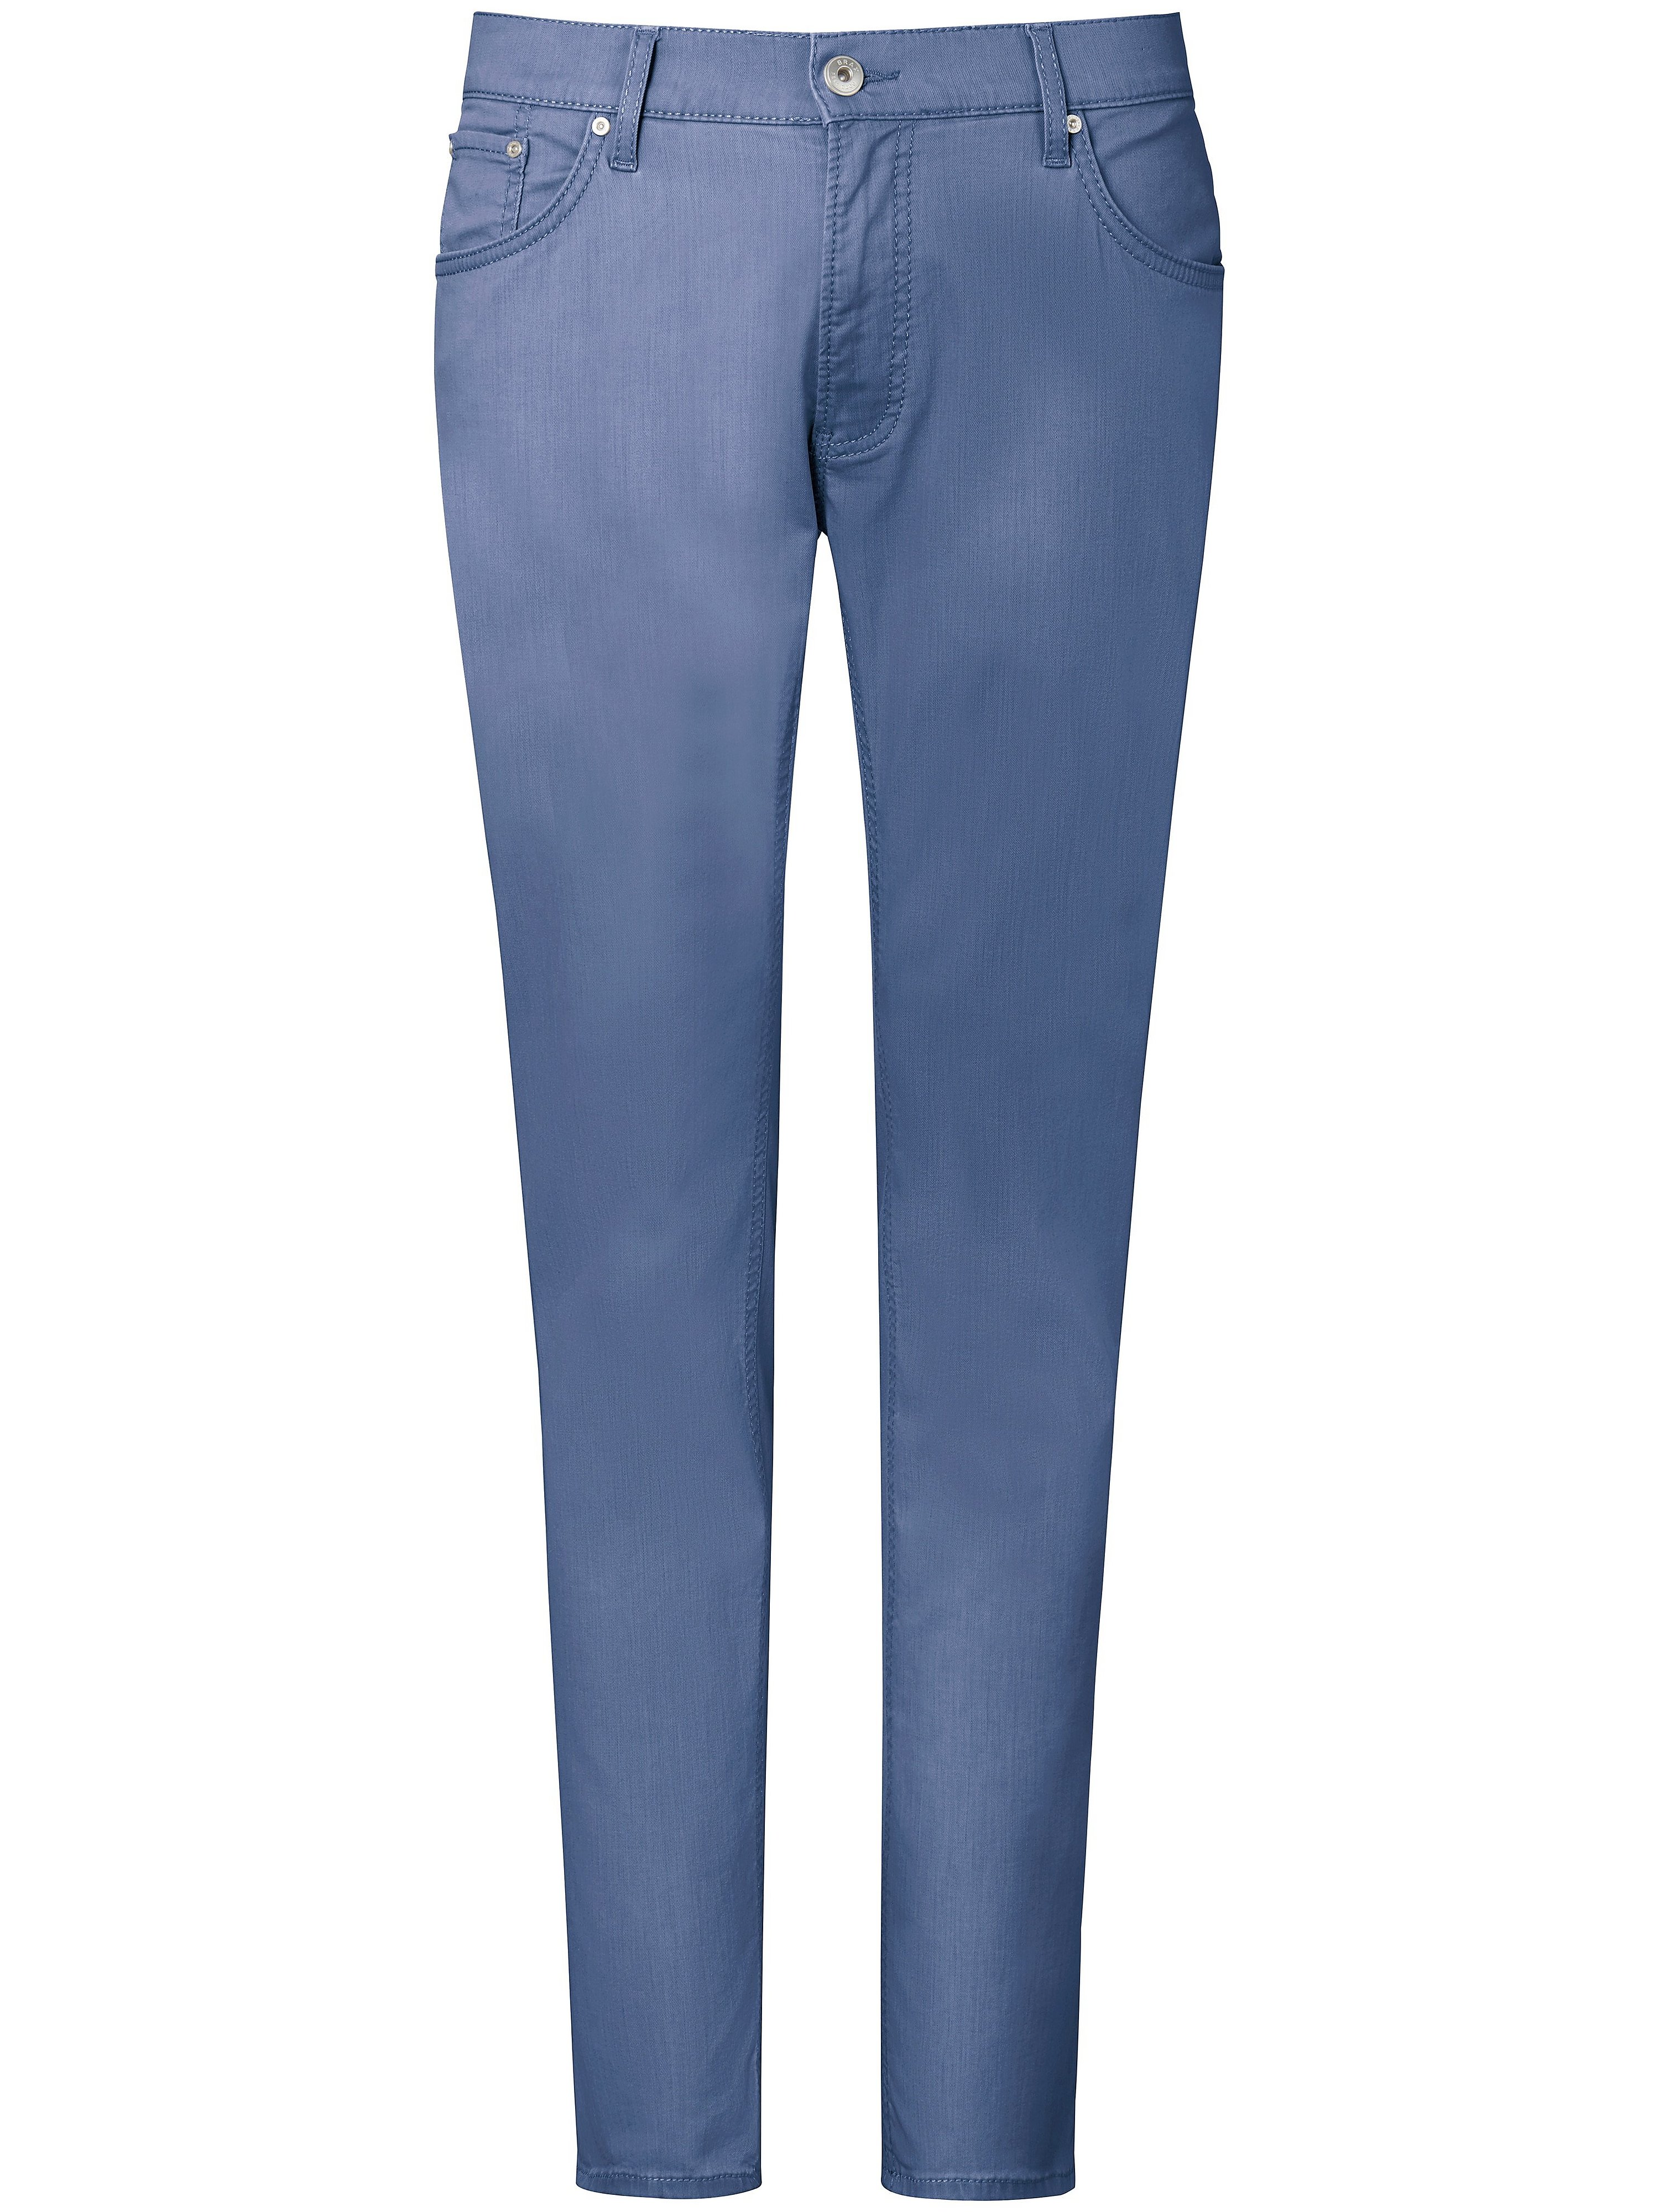 Jeans model Cadiz elastisch Color Denim Van Brax Feel Good blauw